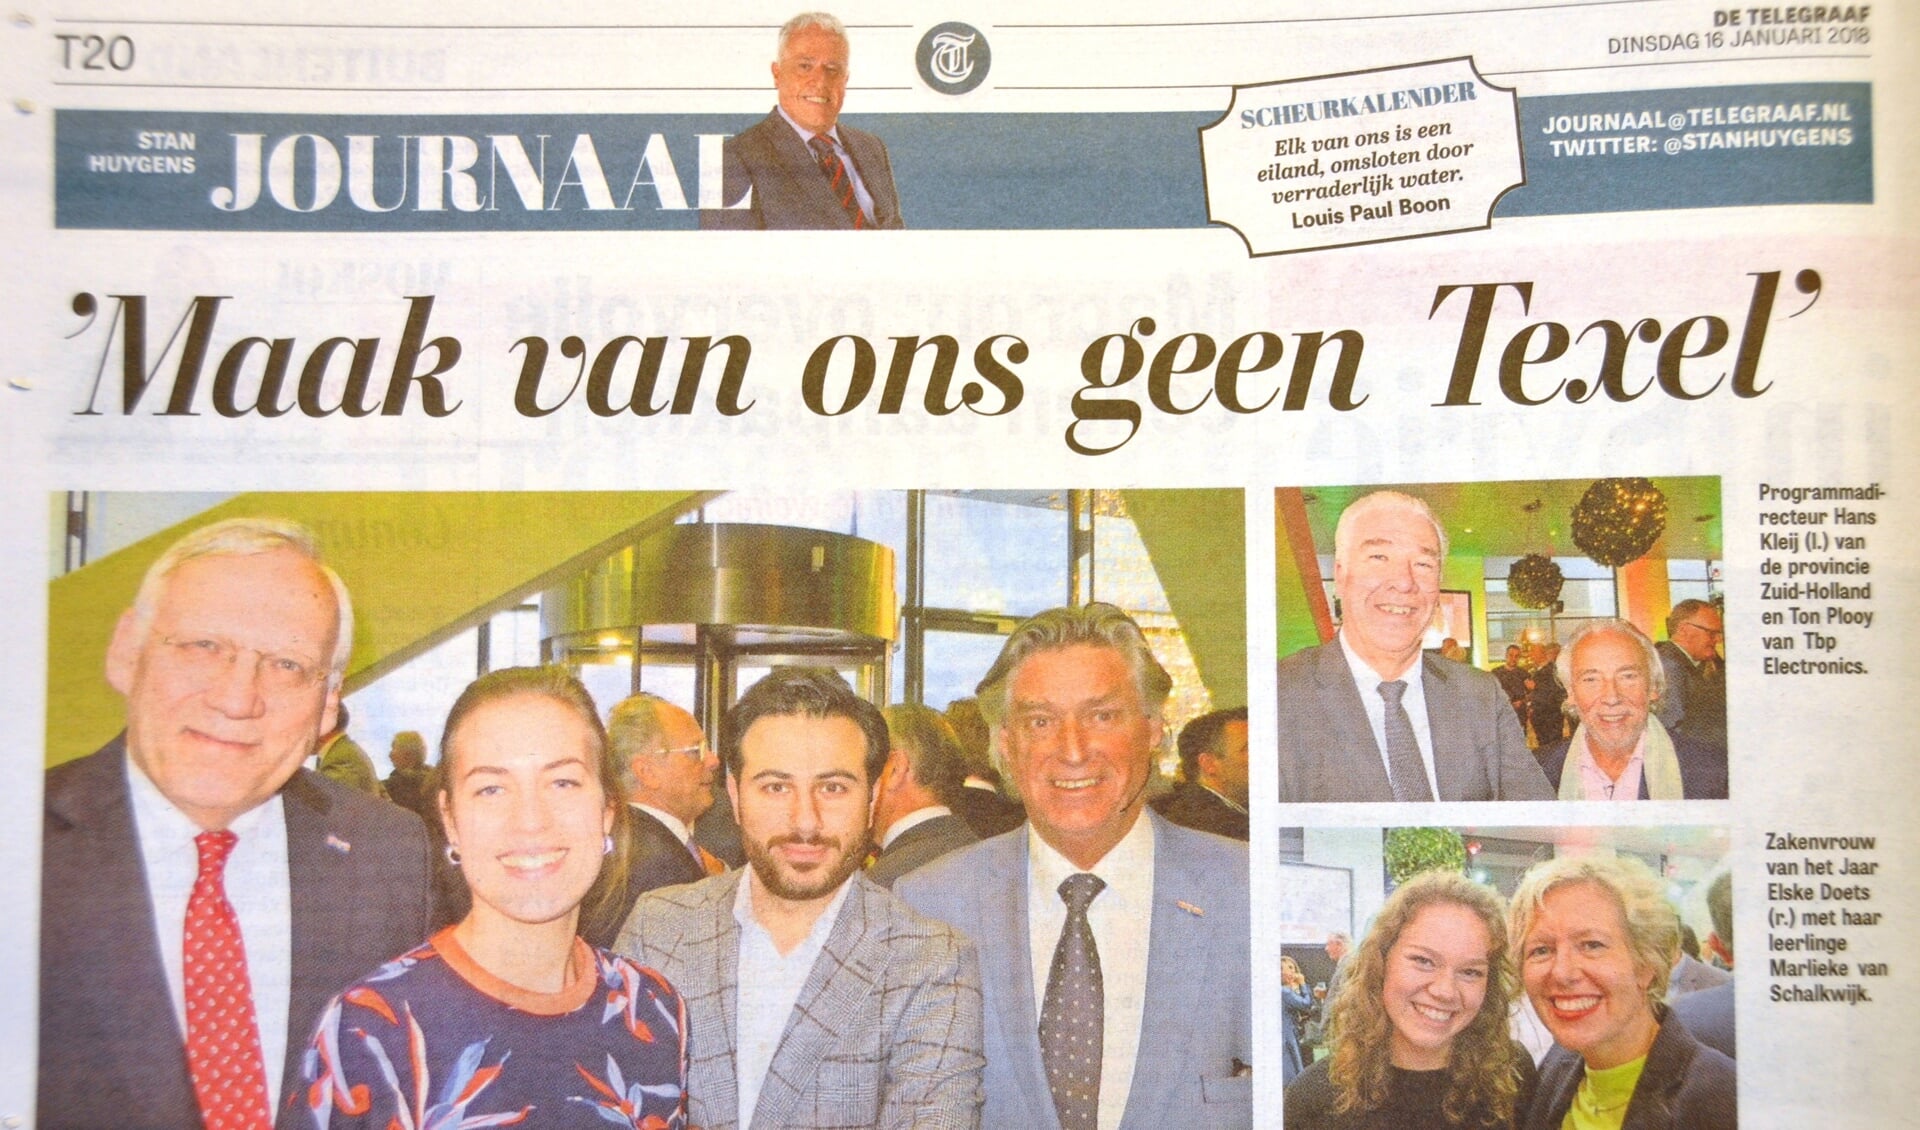 De pagina van het Stan Huygens Journaal in de Telegraaf.